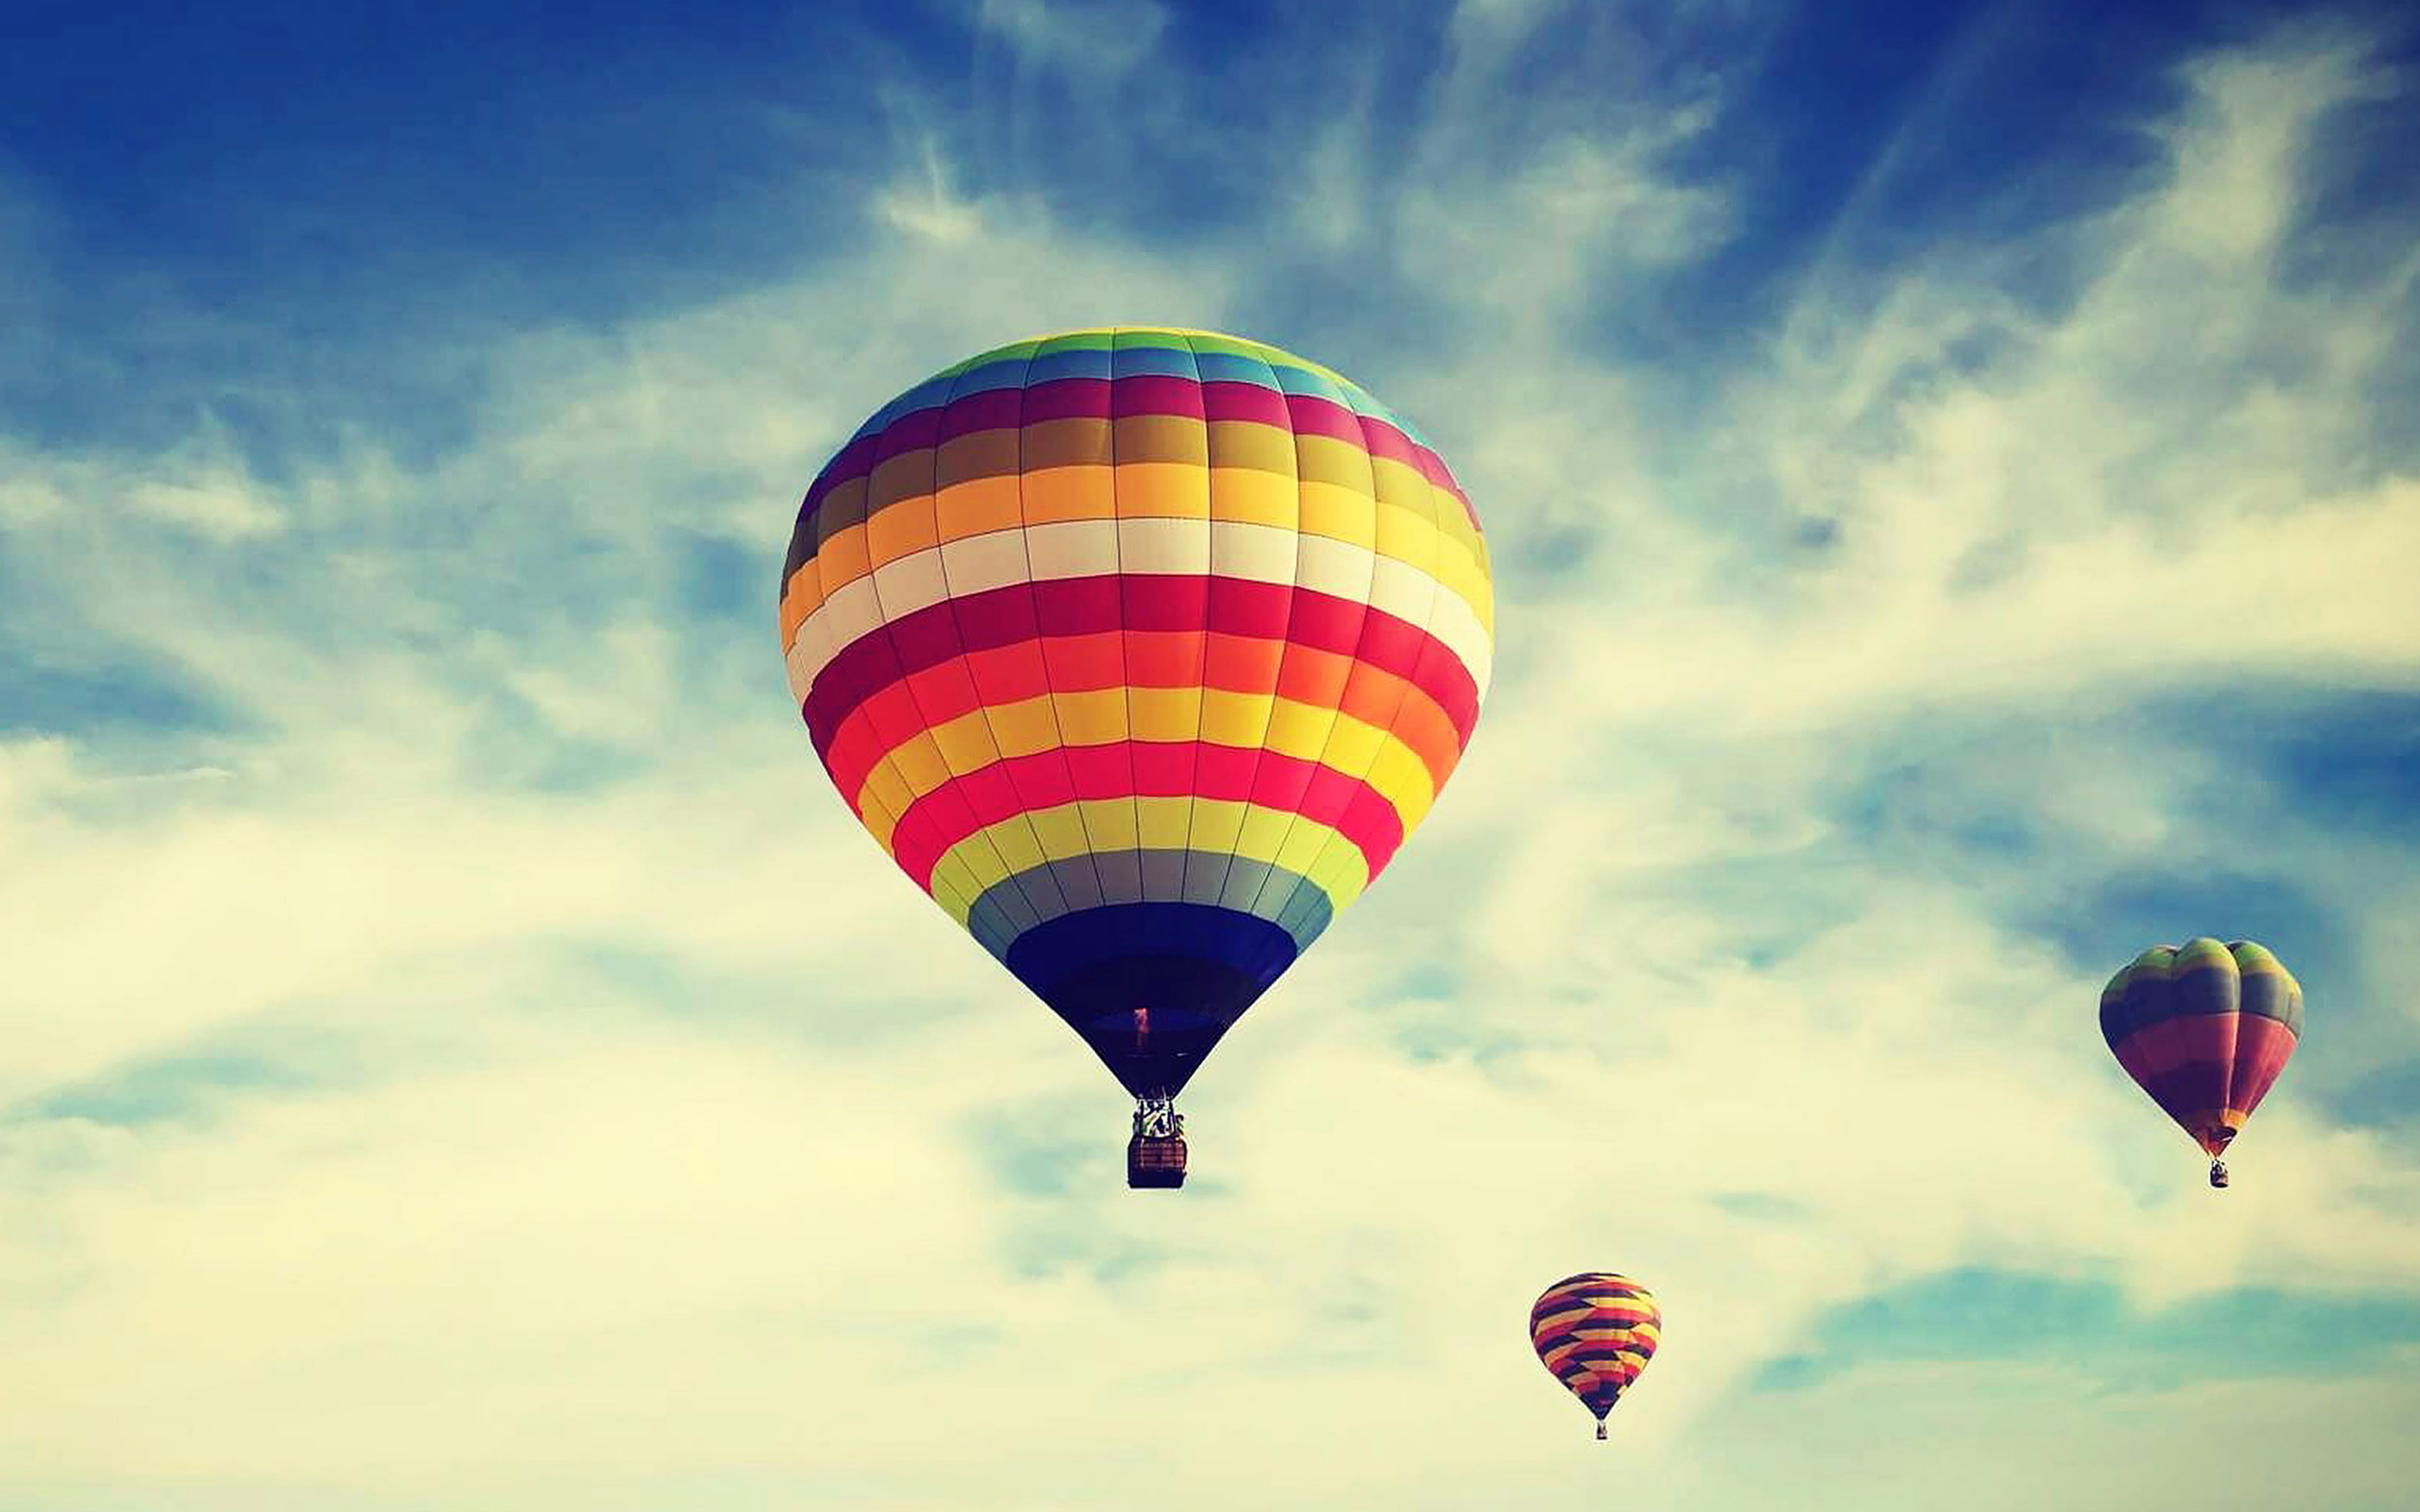 baloon, fly, sea, wallpaper, air vehicle, transportation, hot air balloon